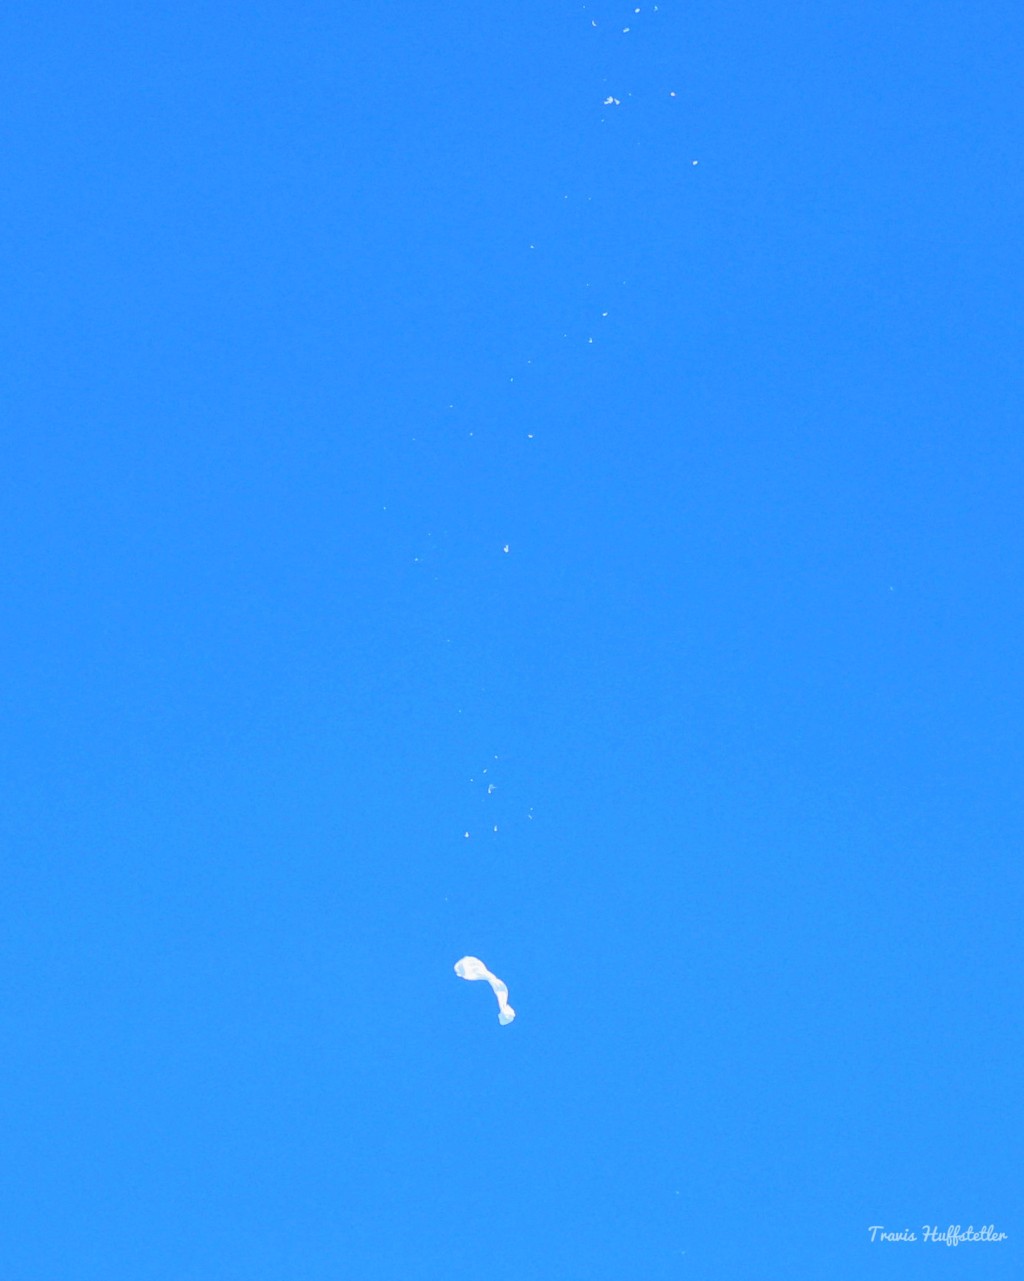 氣球體變得像一張廁紙般由高空飄落。路透社